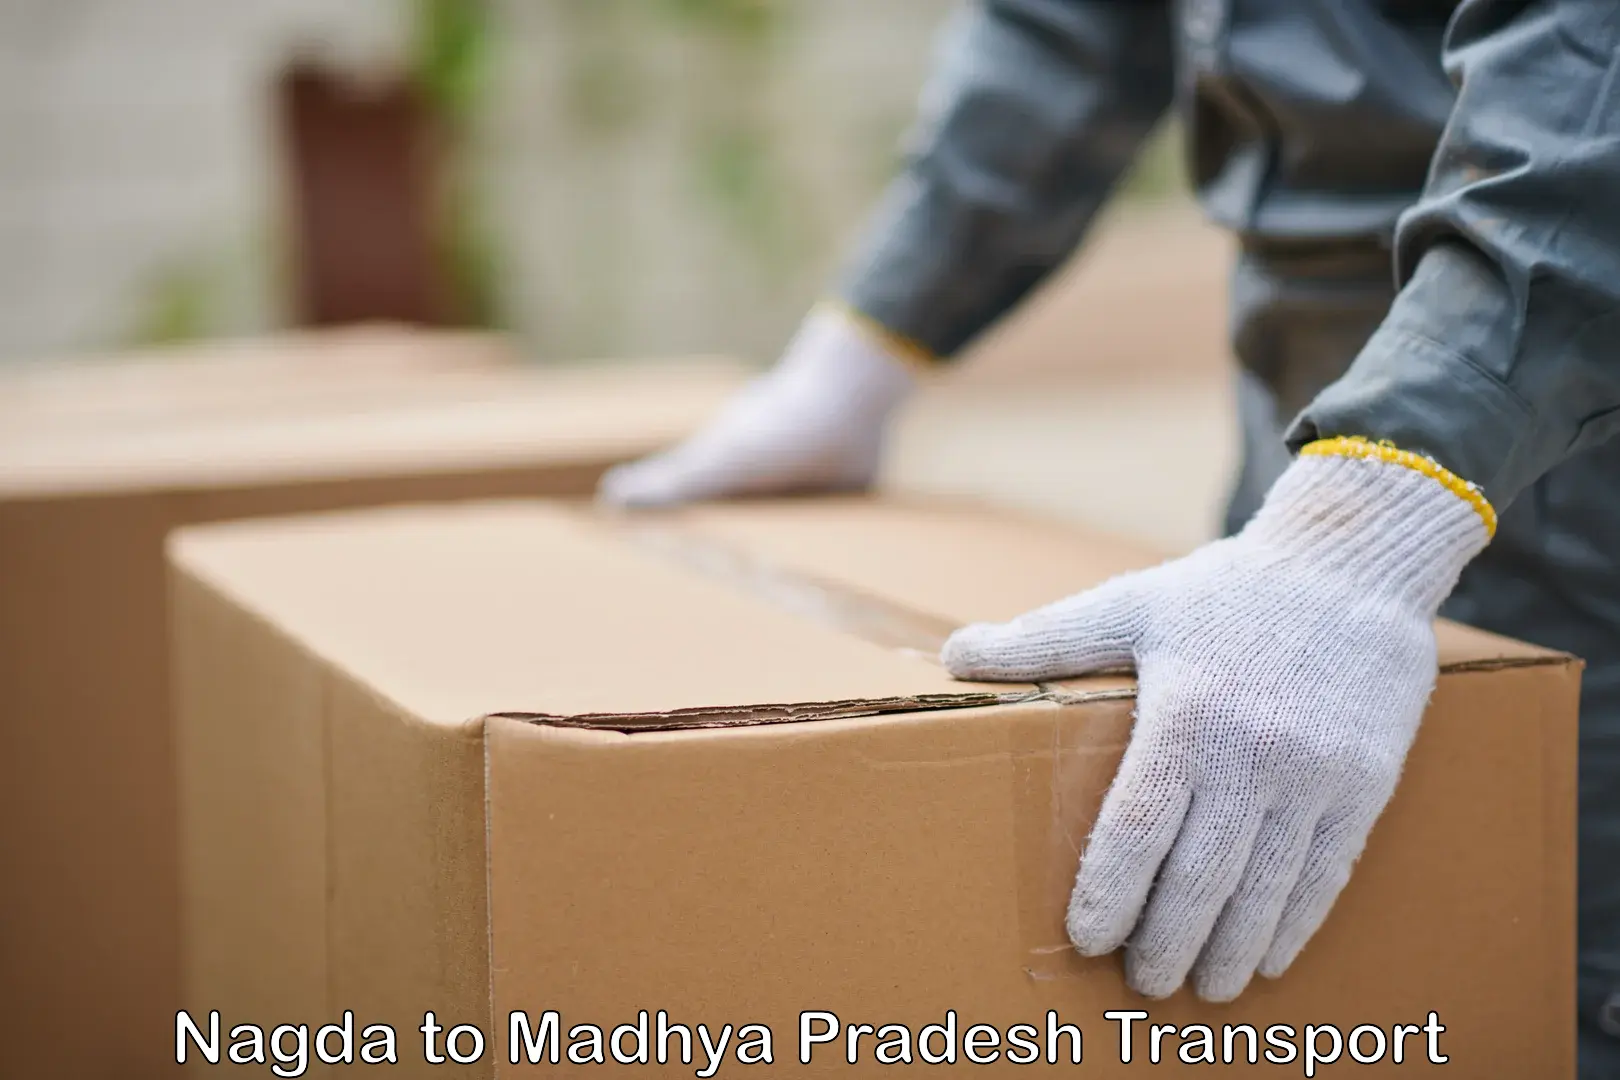 Pick up transport service Nagda to Begumganj